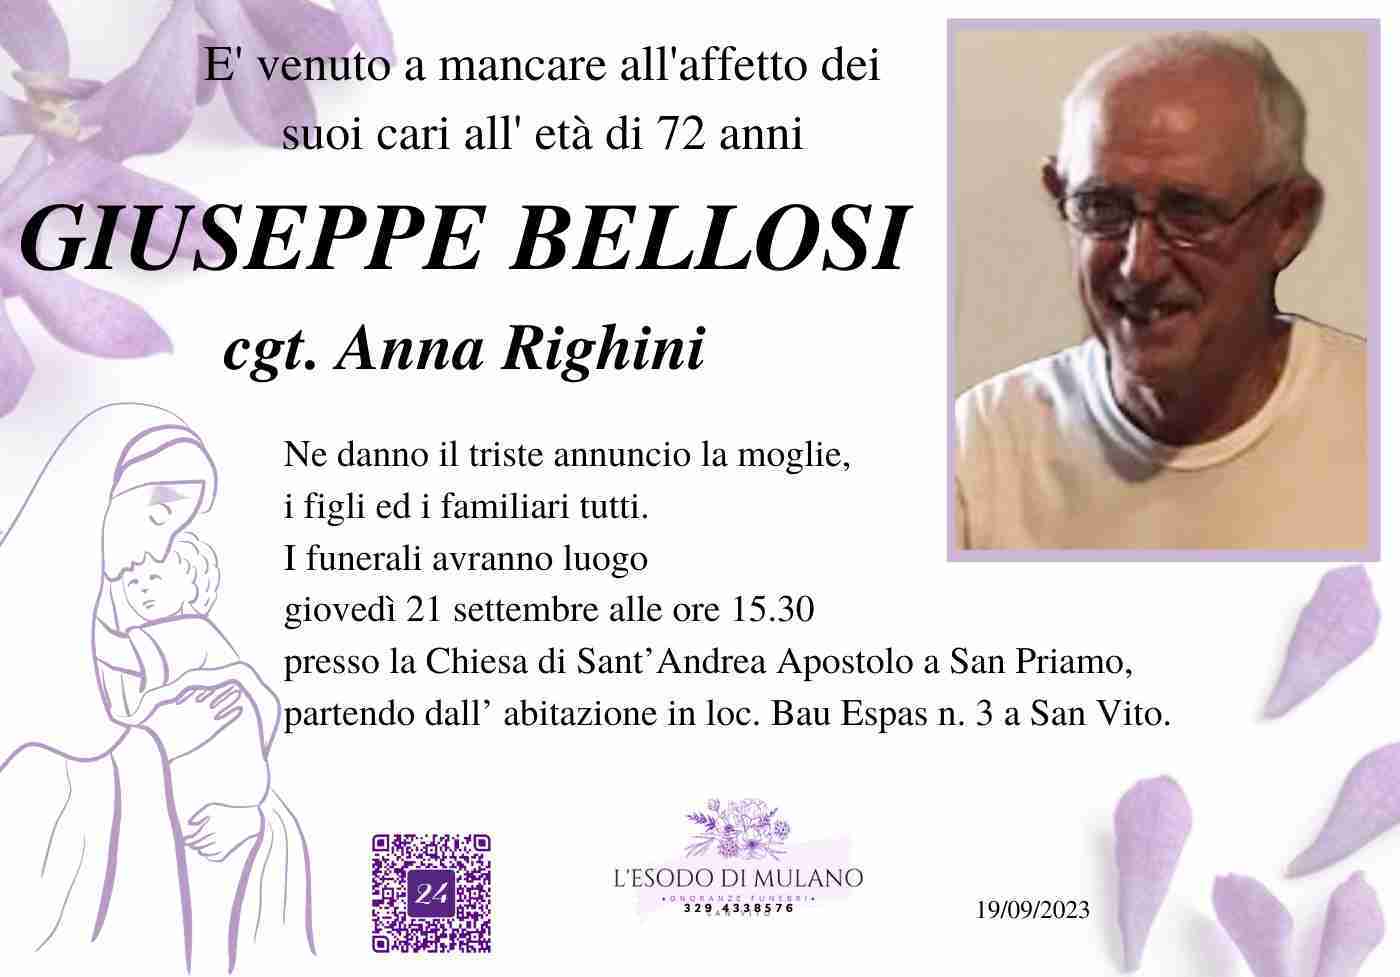 Giuseppe Bellosi